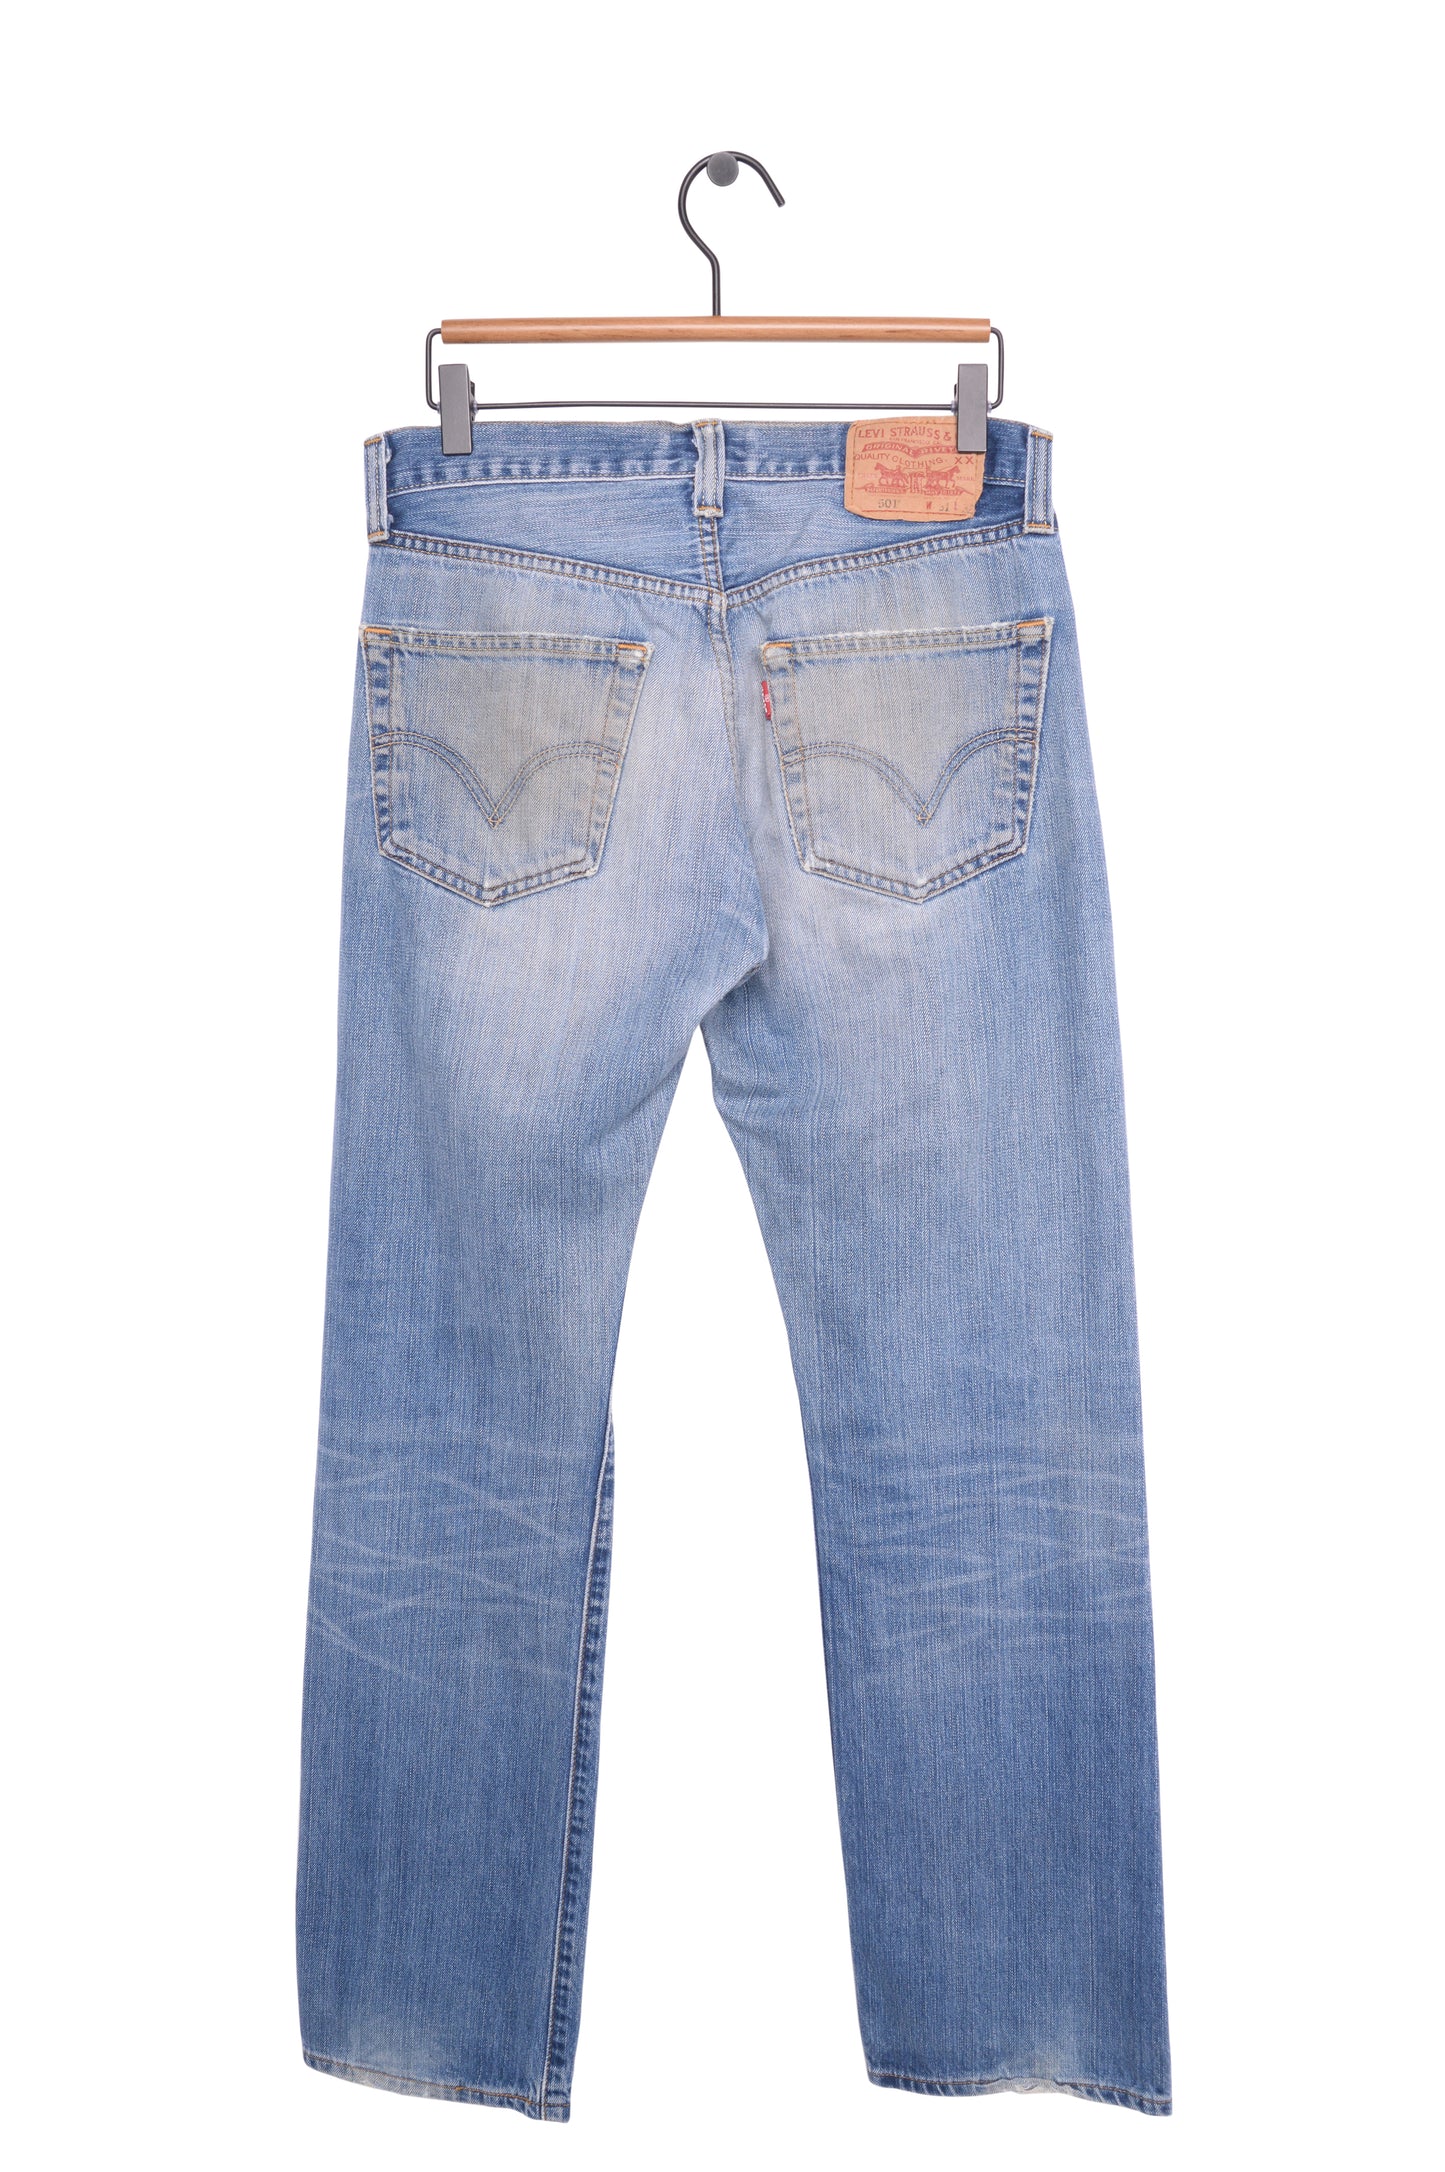 Faded Straight 501 Levi's Jeans 30W x 31L